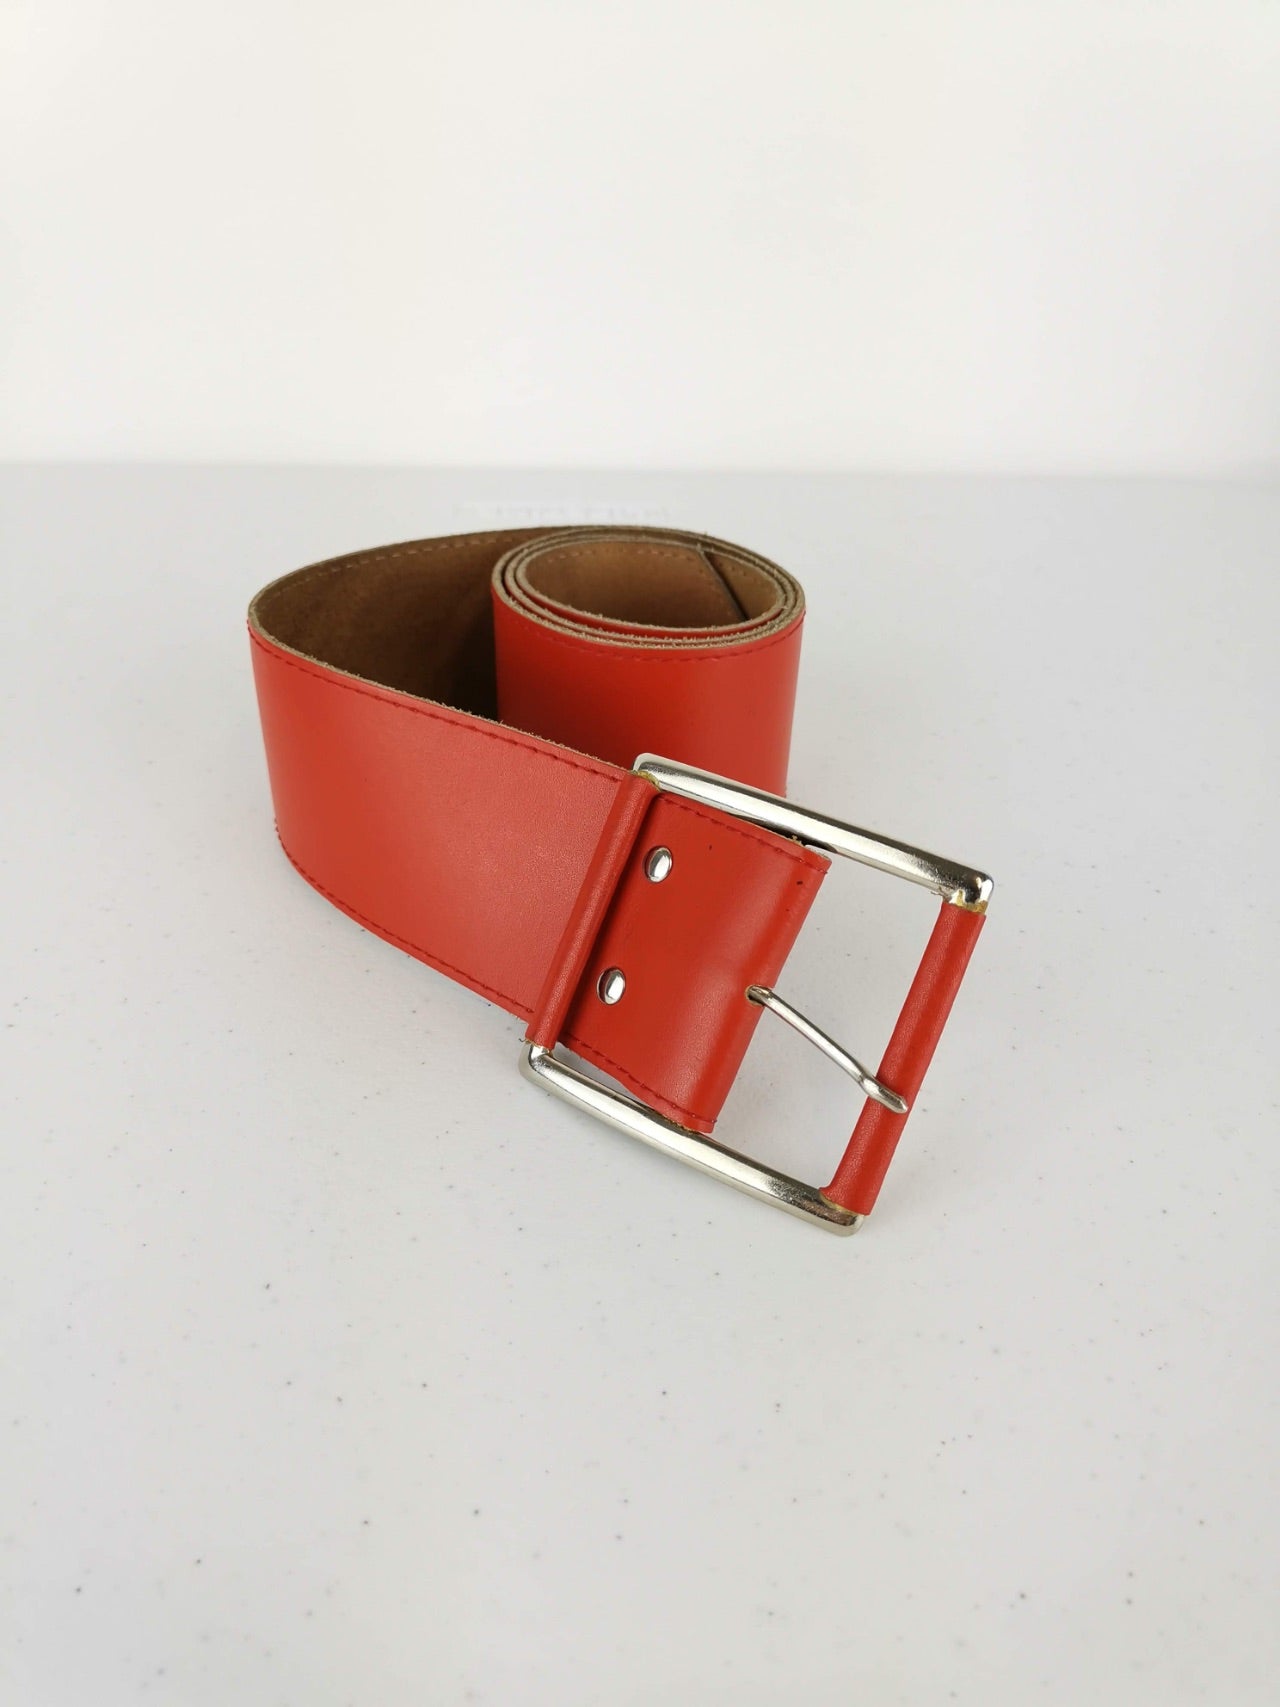 Cinturón Piel Rojo / Talla S